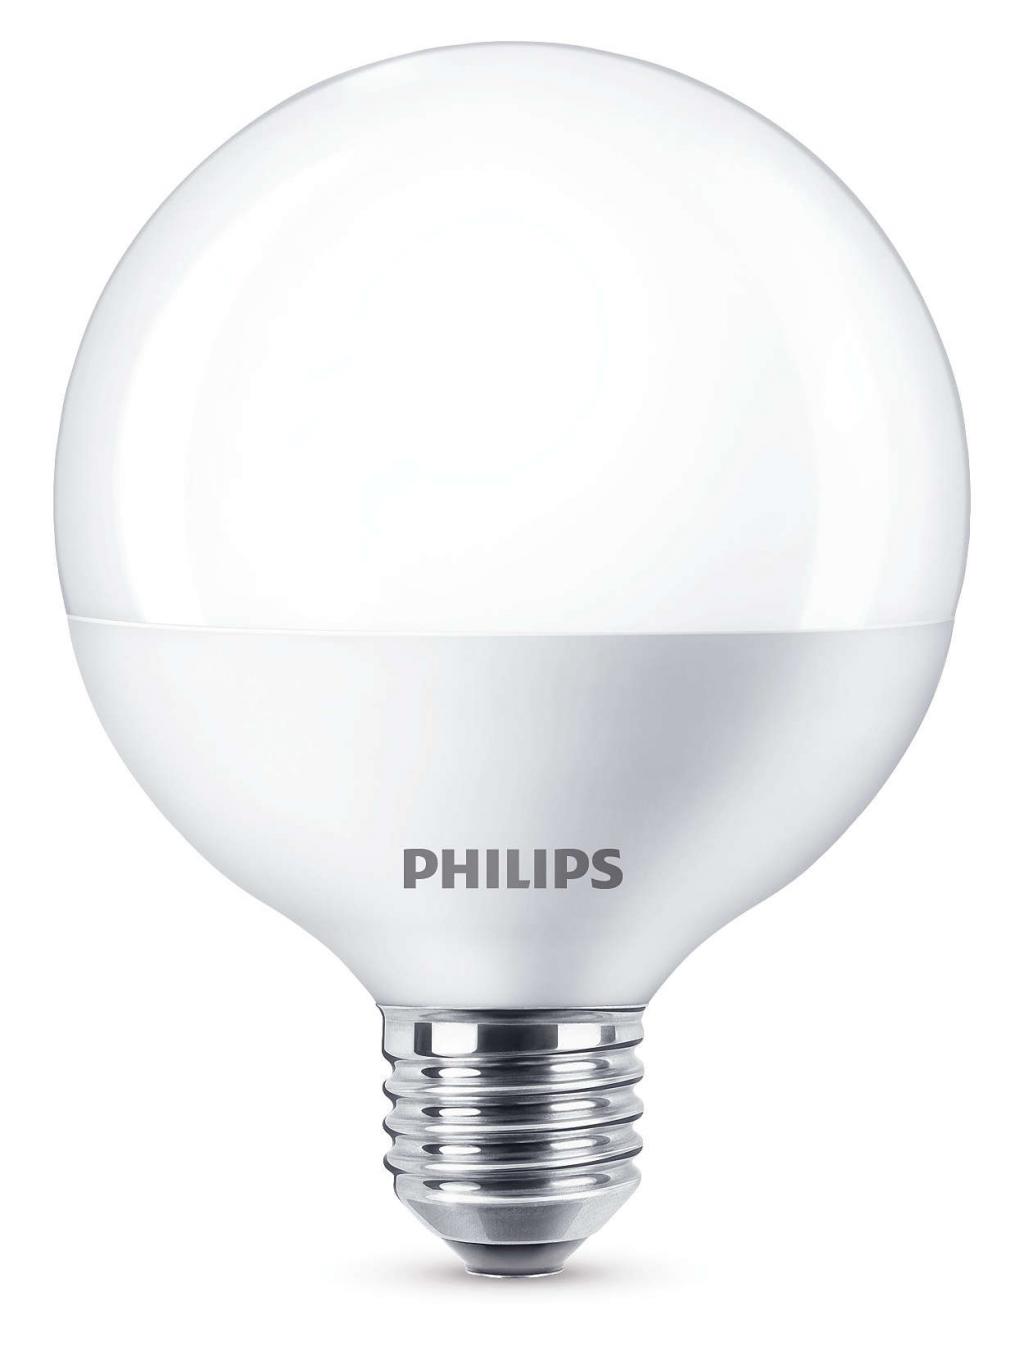 Philips CorePro LEDglobe ND 18-120W G120 E27 827